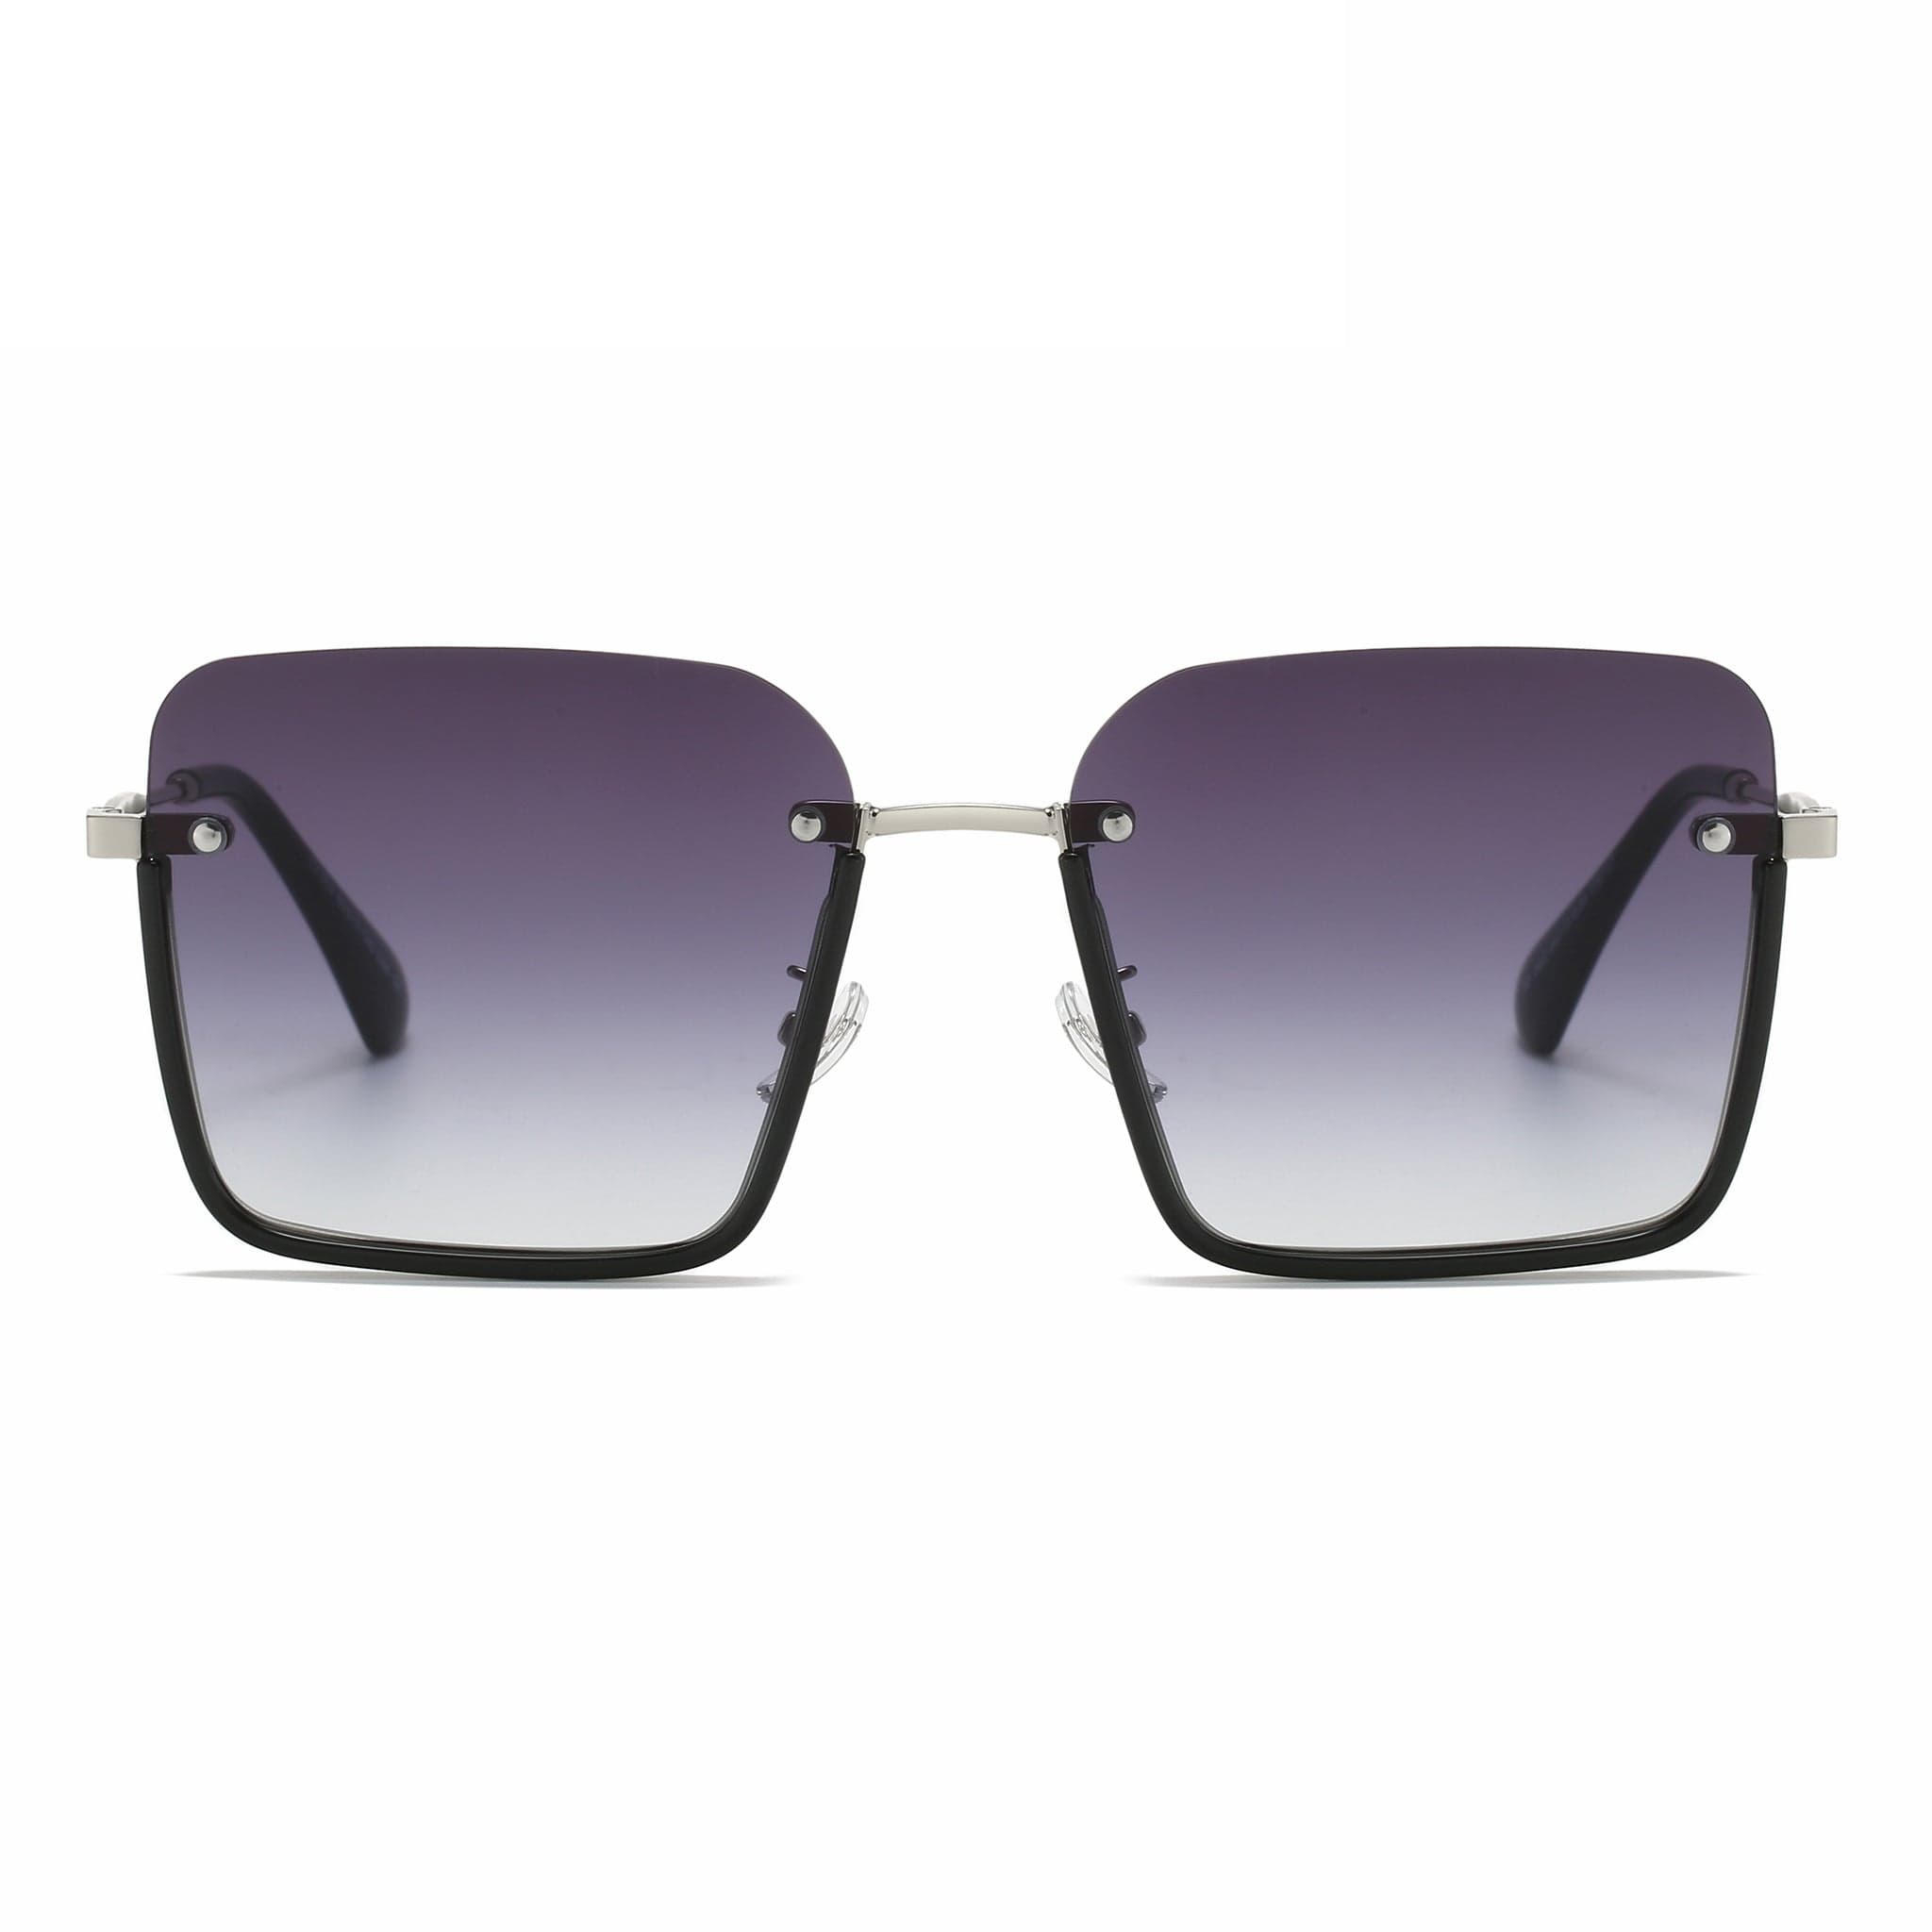 GIUSTIZIERI VECCHI Sunglasses Medium / Purple Grey Cielo Uno